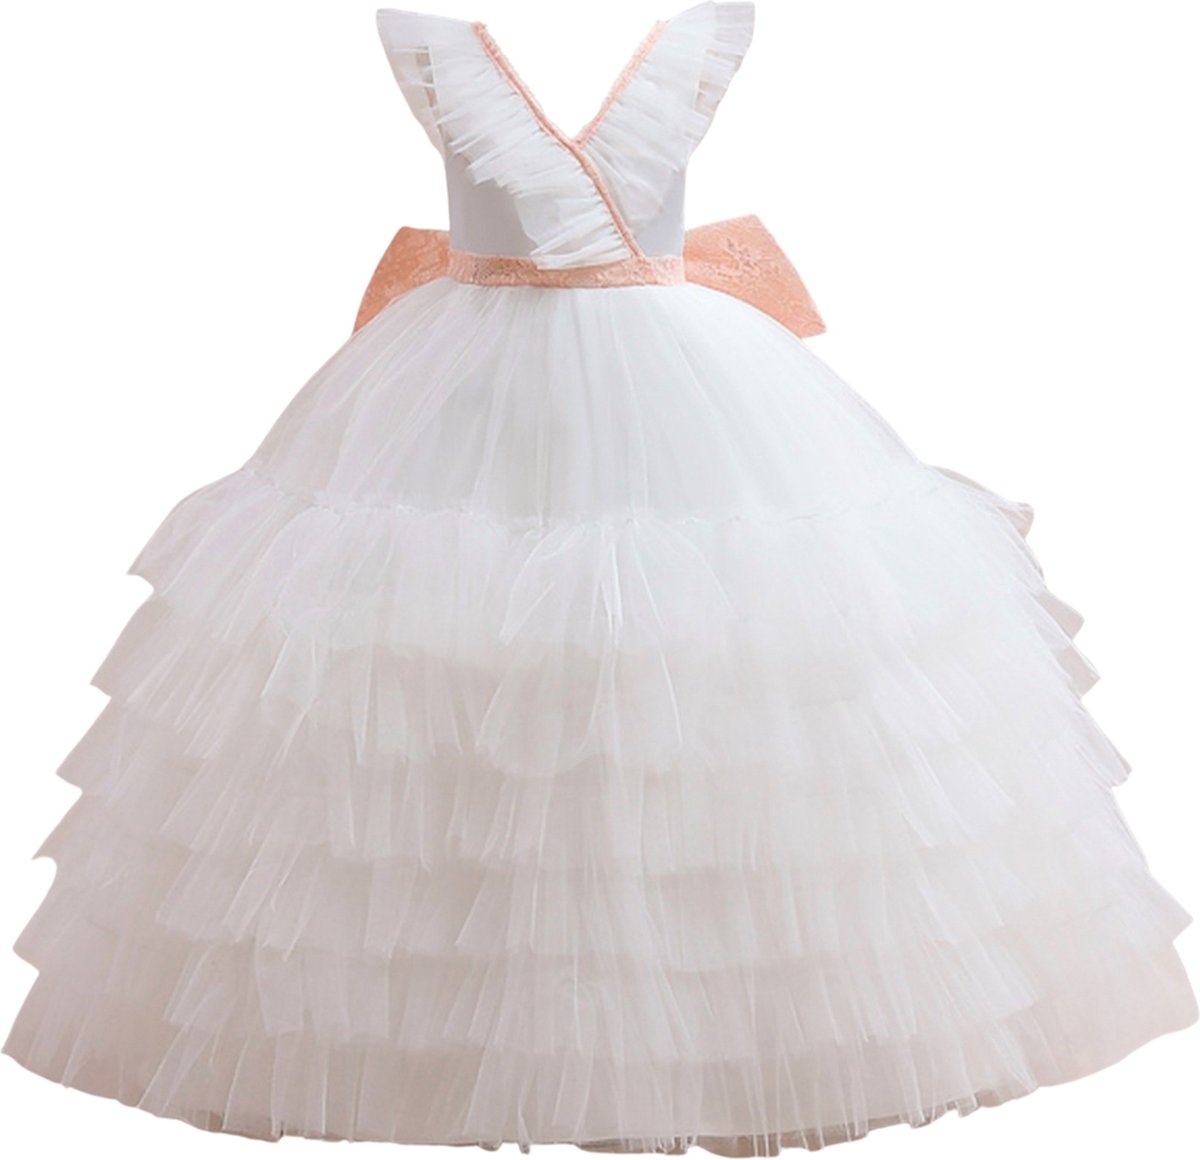 Prinsessenjurk meisje - Het Betere Merk - feestjurk meisje - bruidsmeisjes jurken - maat 122/128 (130) - communie jurk - bruidsmeisjes jurken voor kinderen - cadeau meisje